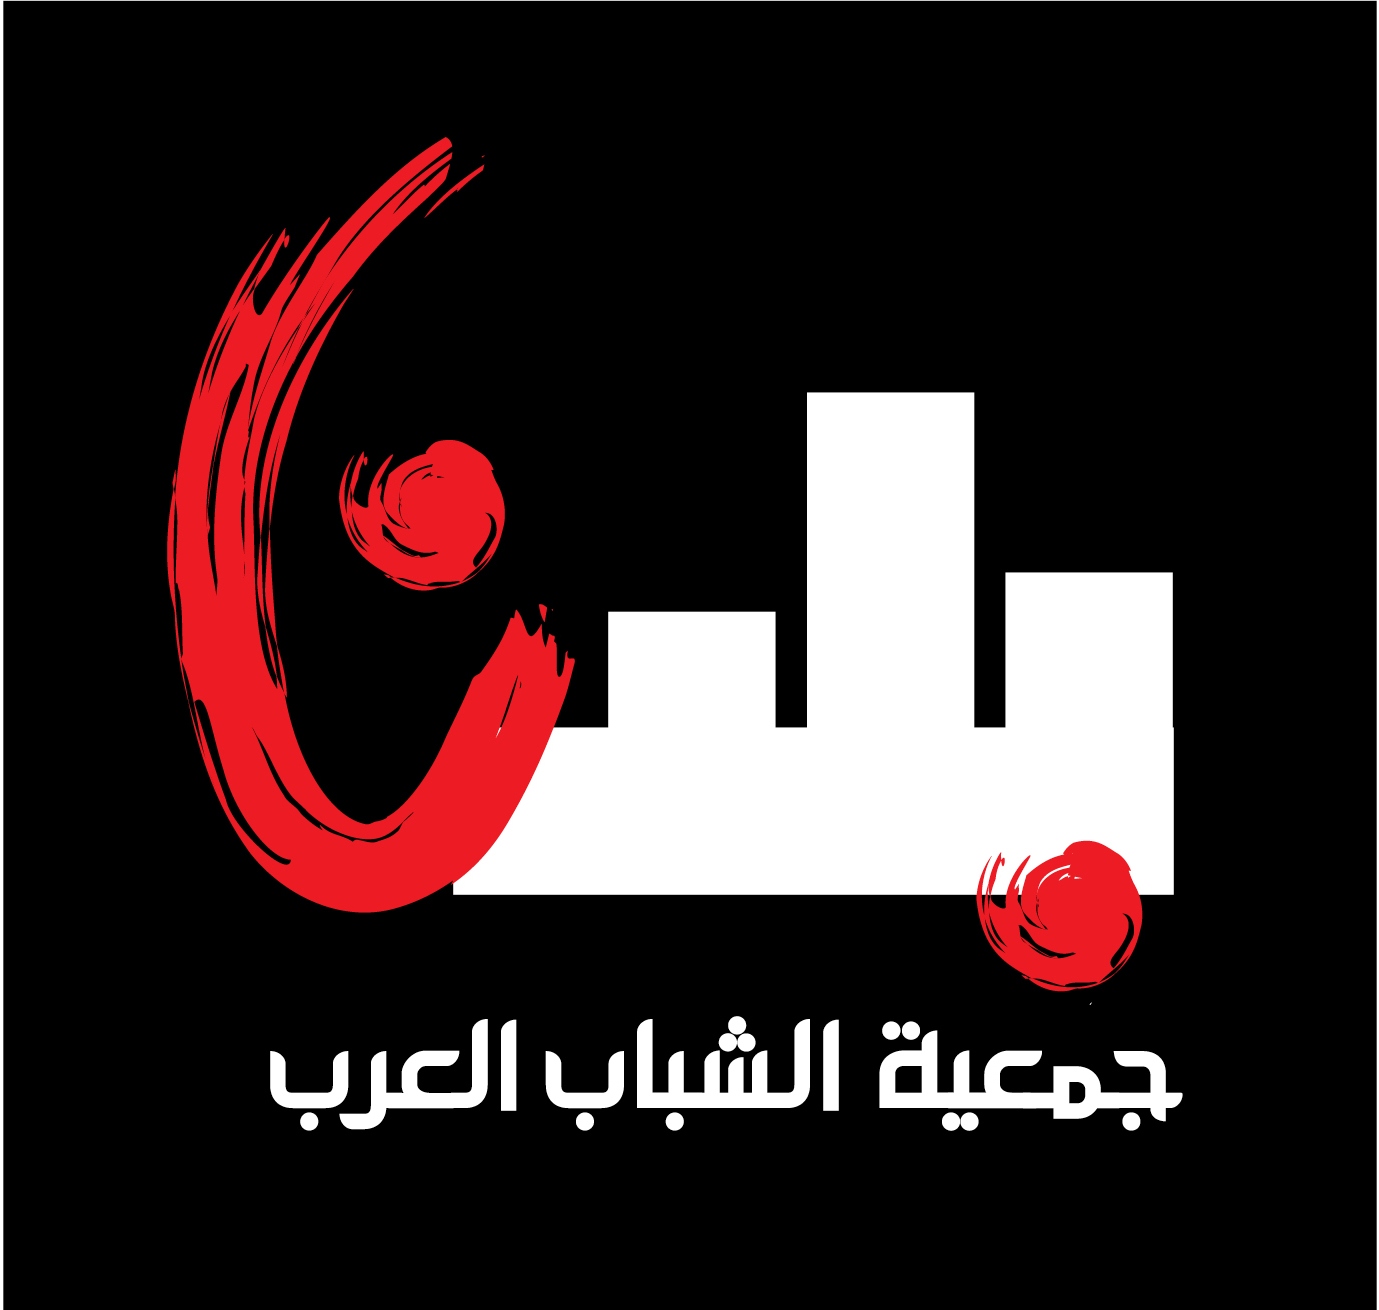 مطلوب لجمعية الشباب العرب- بلدنا:  منسق/ة مشروع شبابي تربوي